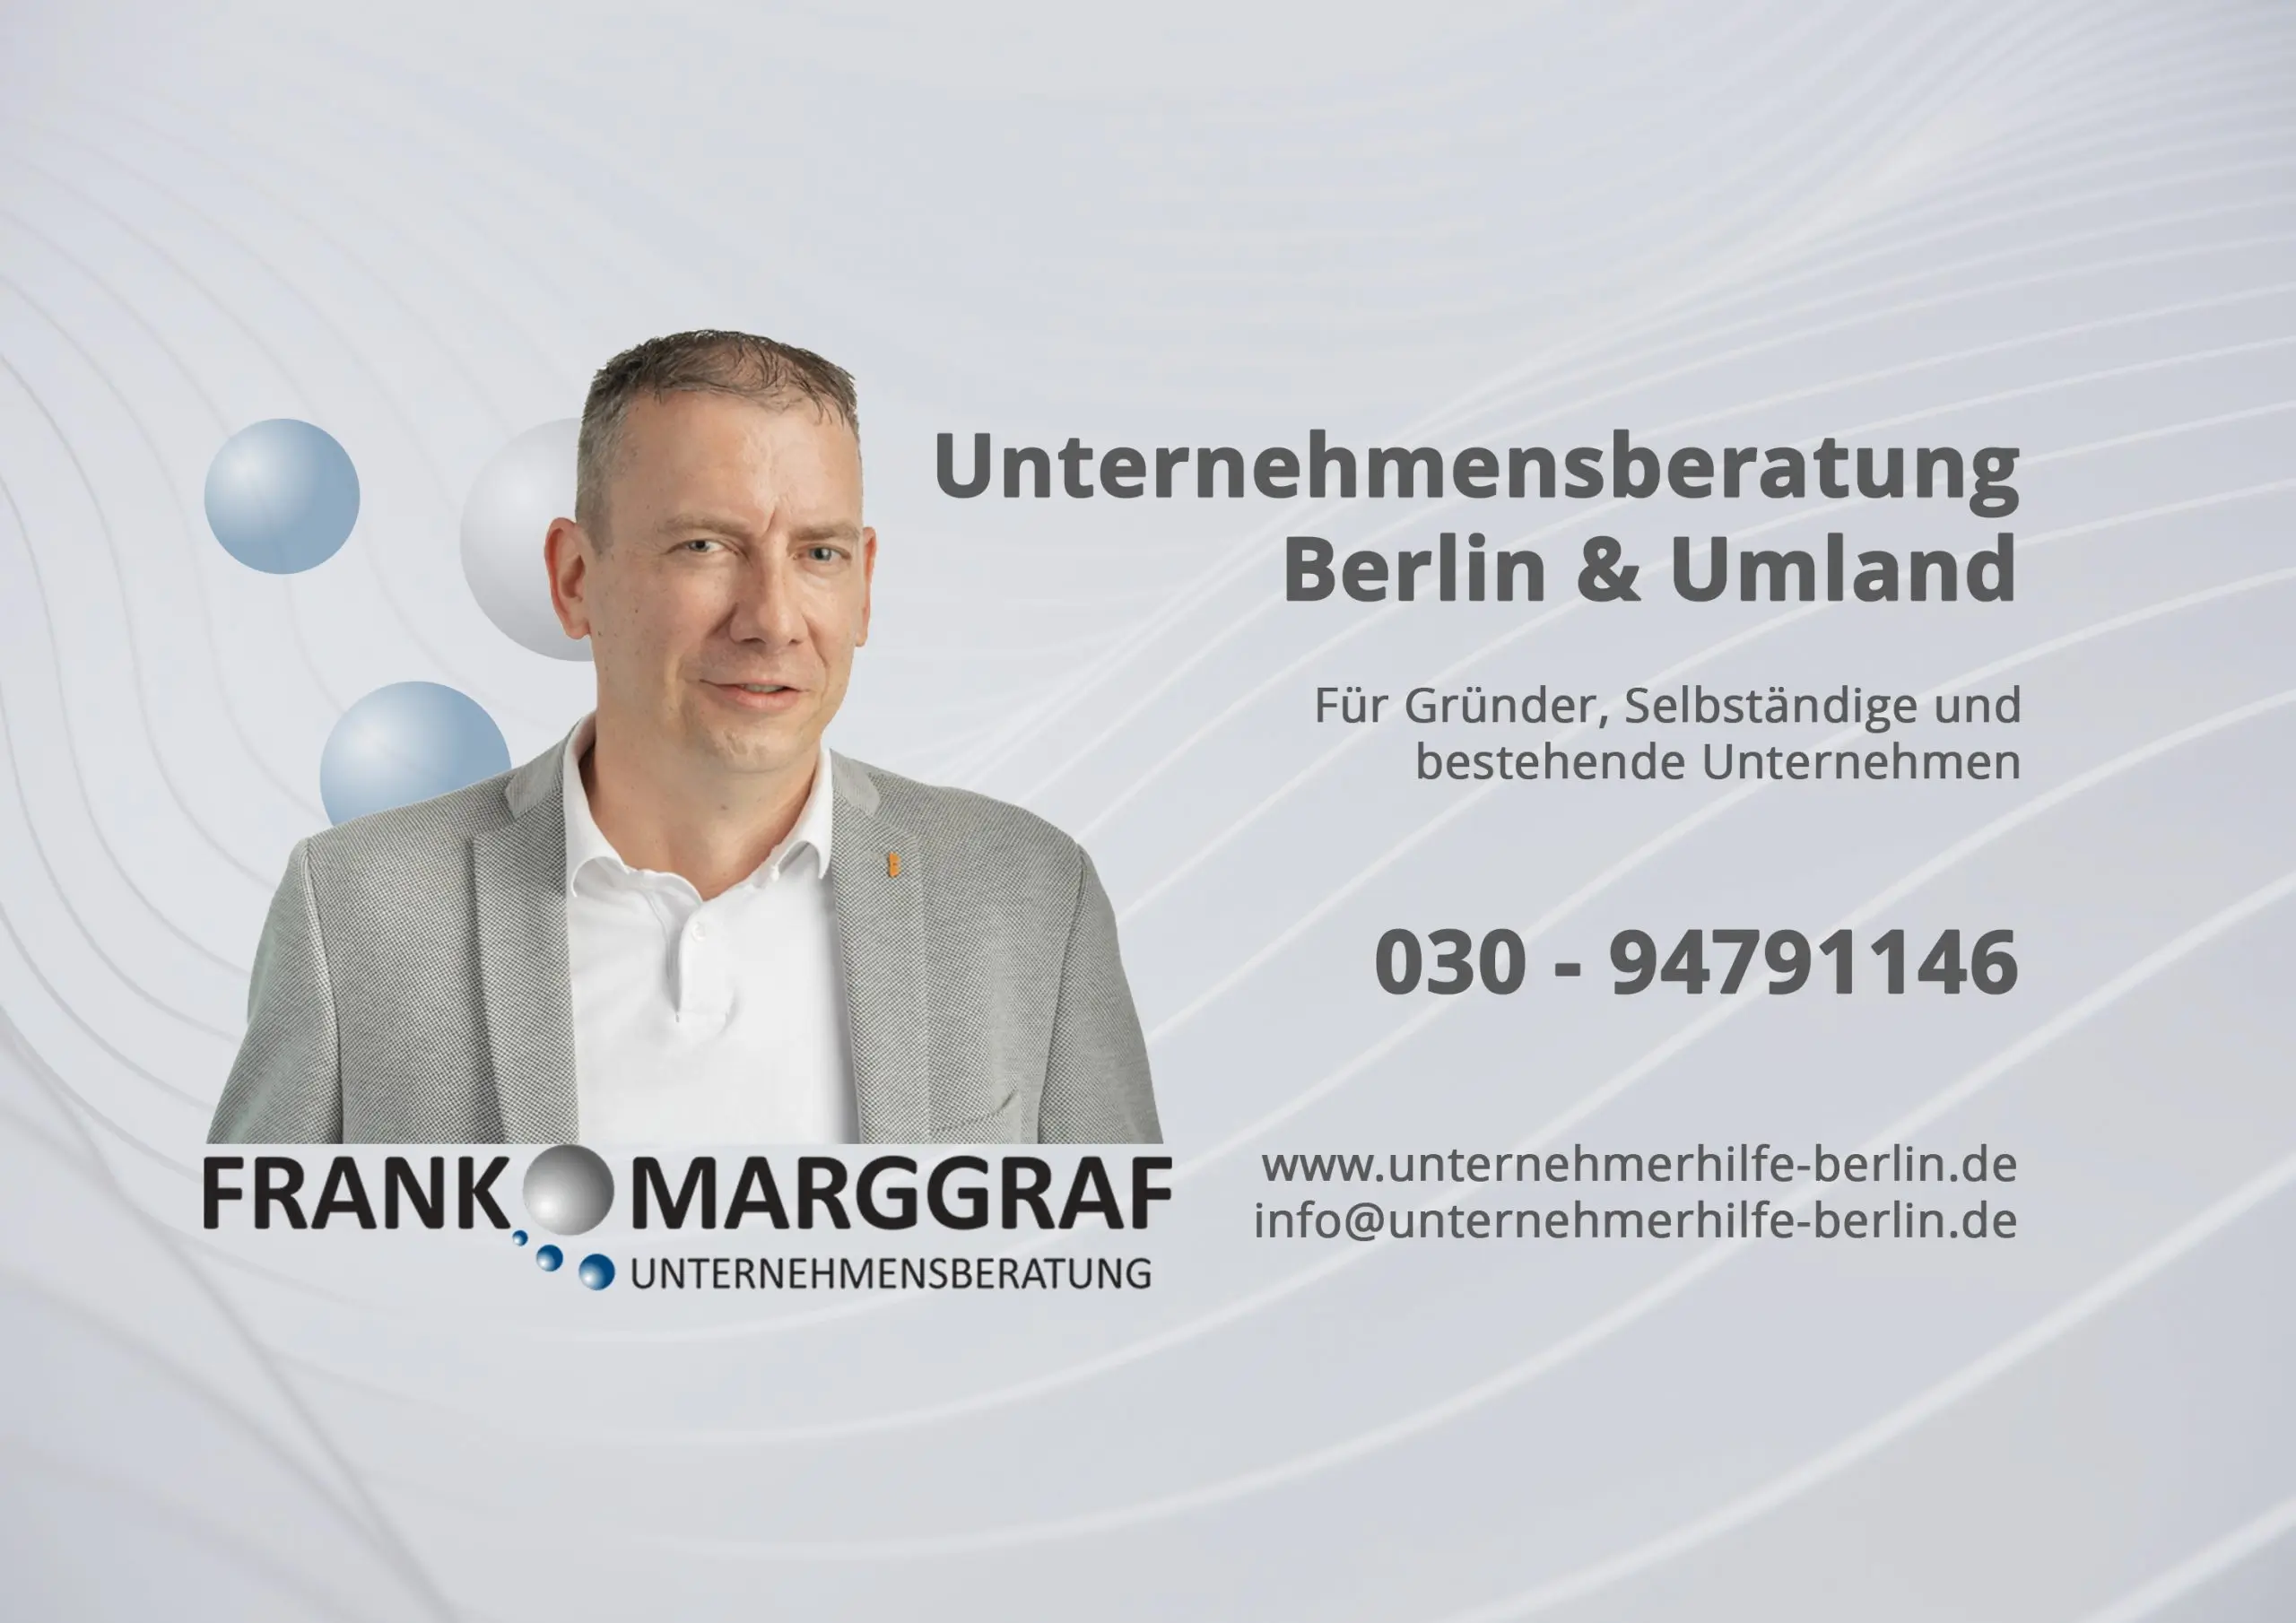 Frank Marggraf Unternehmensberatung Berlin & Brandenburg für Gründer, Selbständige und bestehende Unternehmen